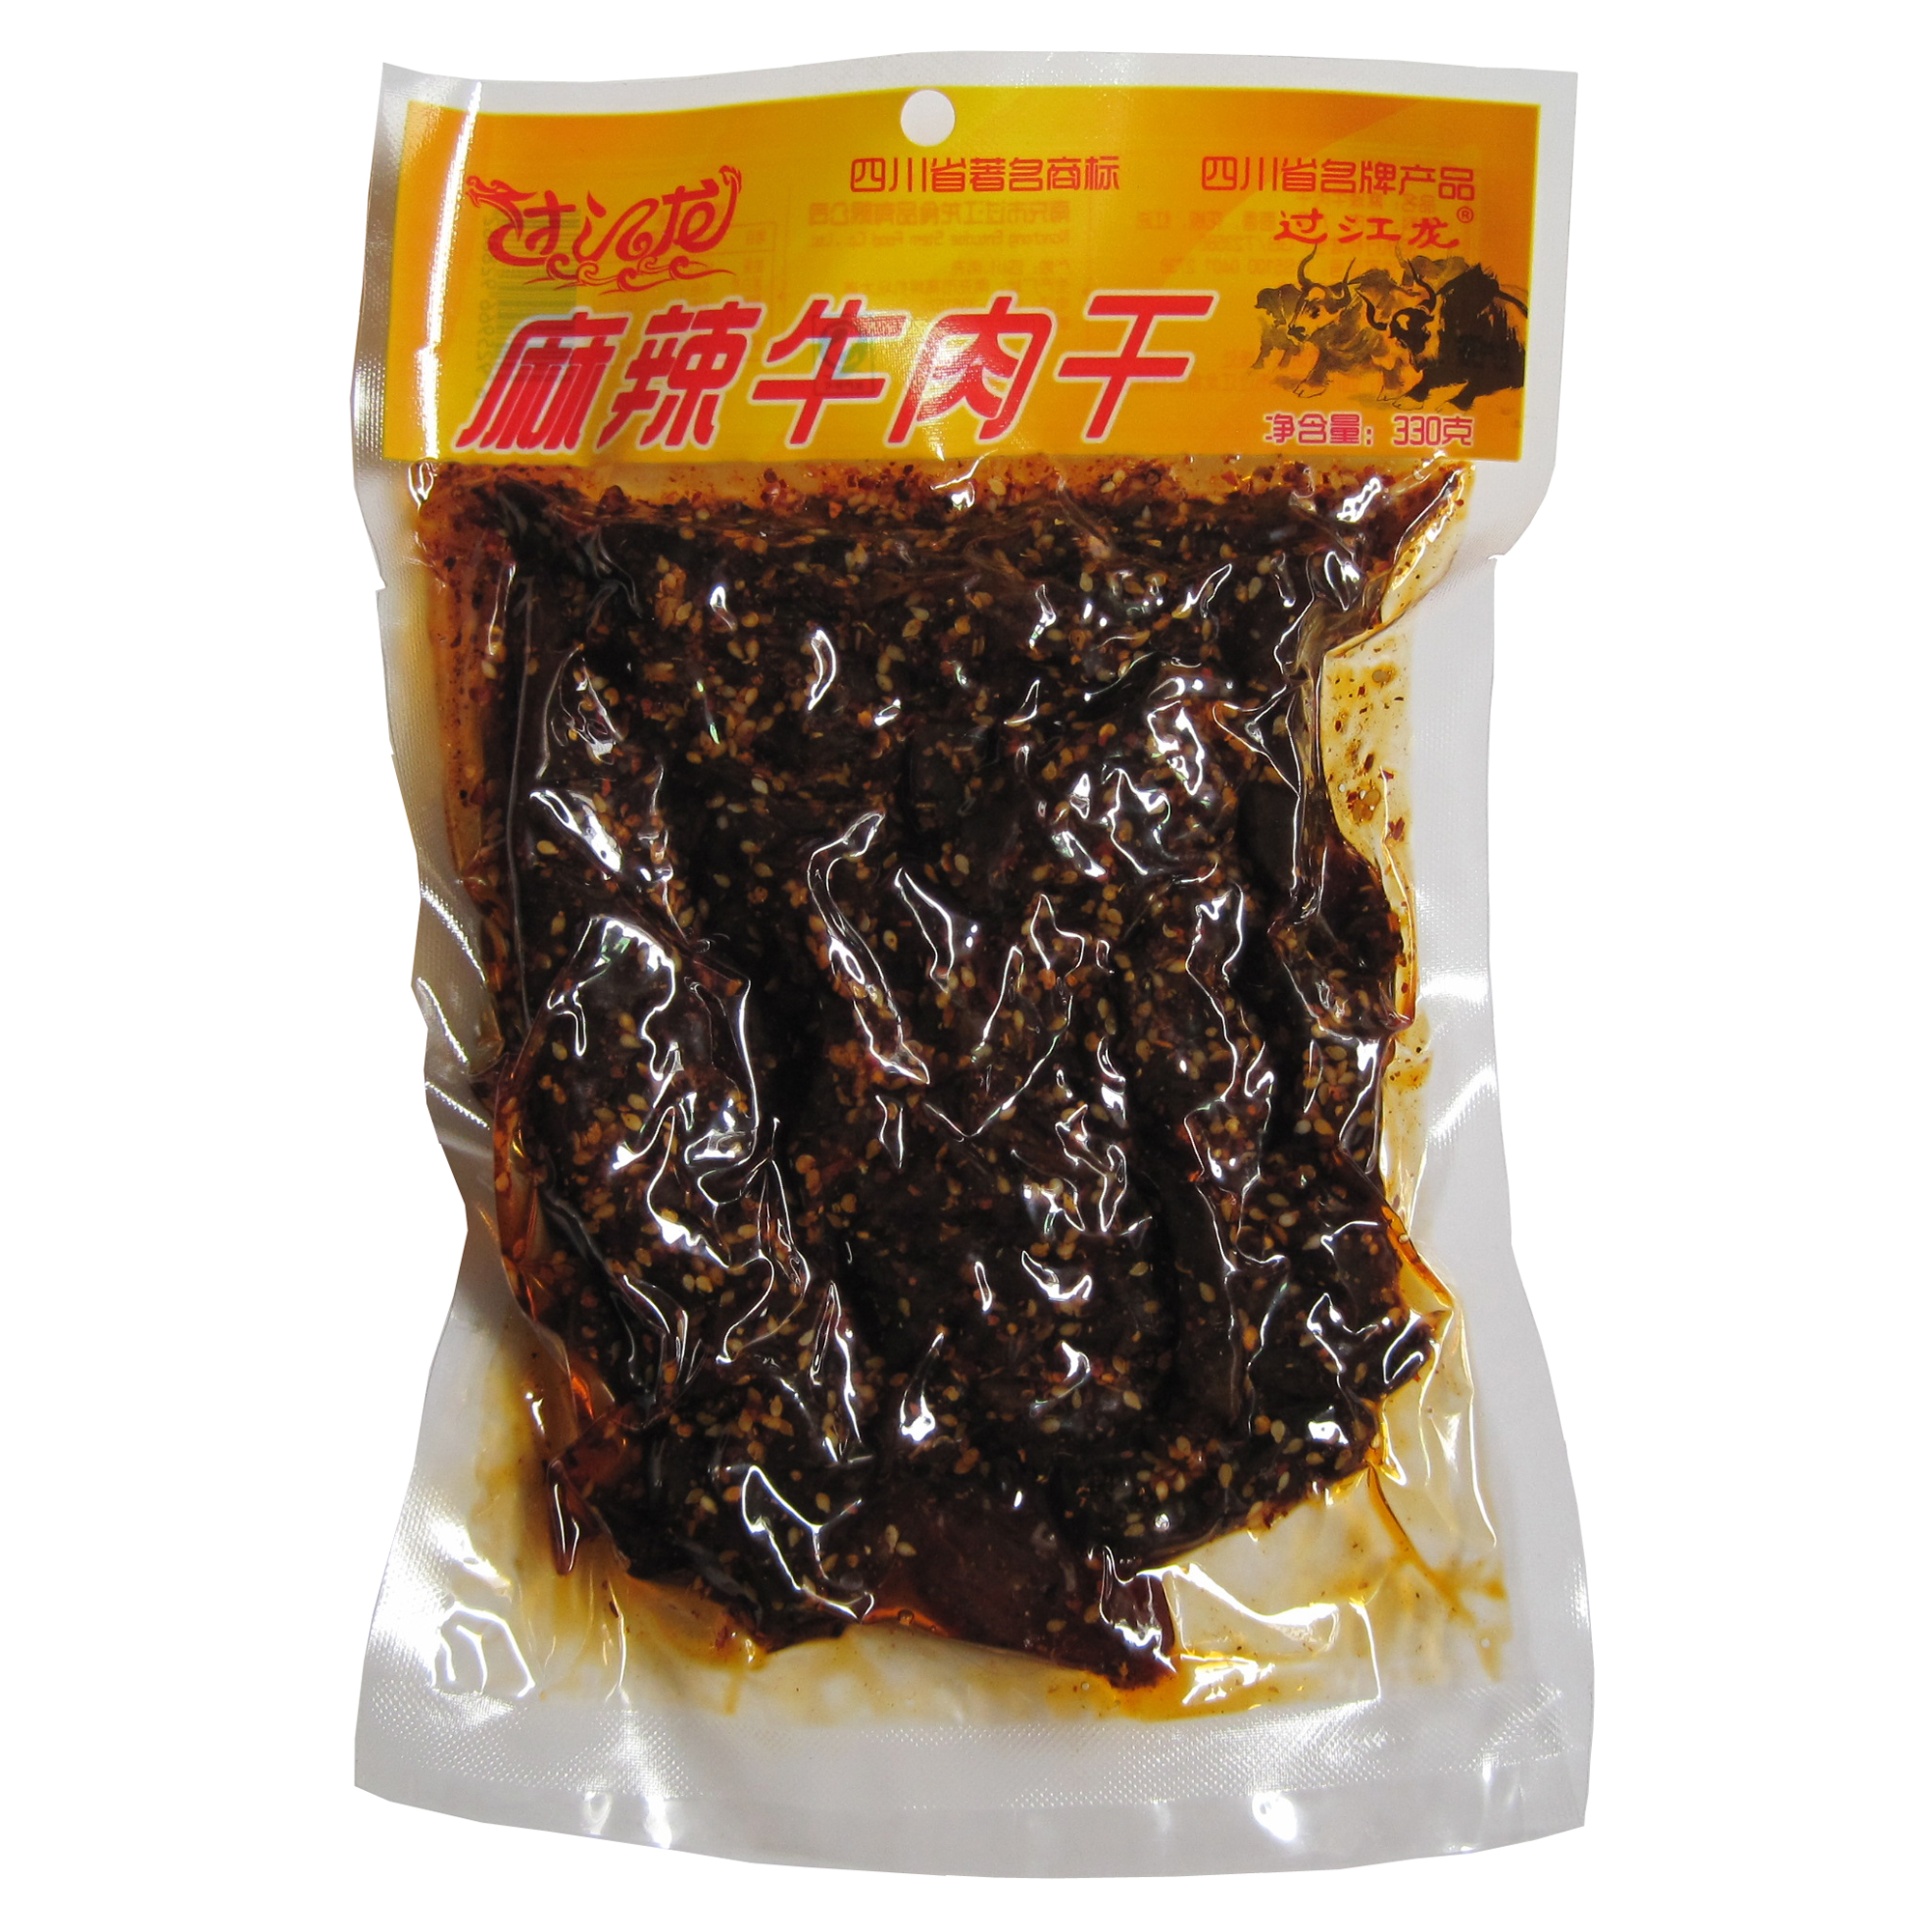 厂家直销四川南充特产过江龙牌麻辣牛肉干味道鲜美香辣适宜330克